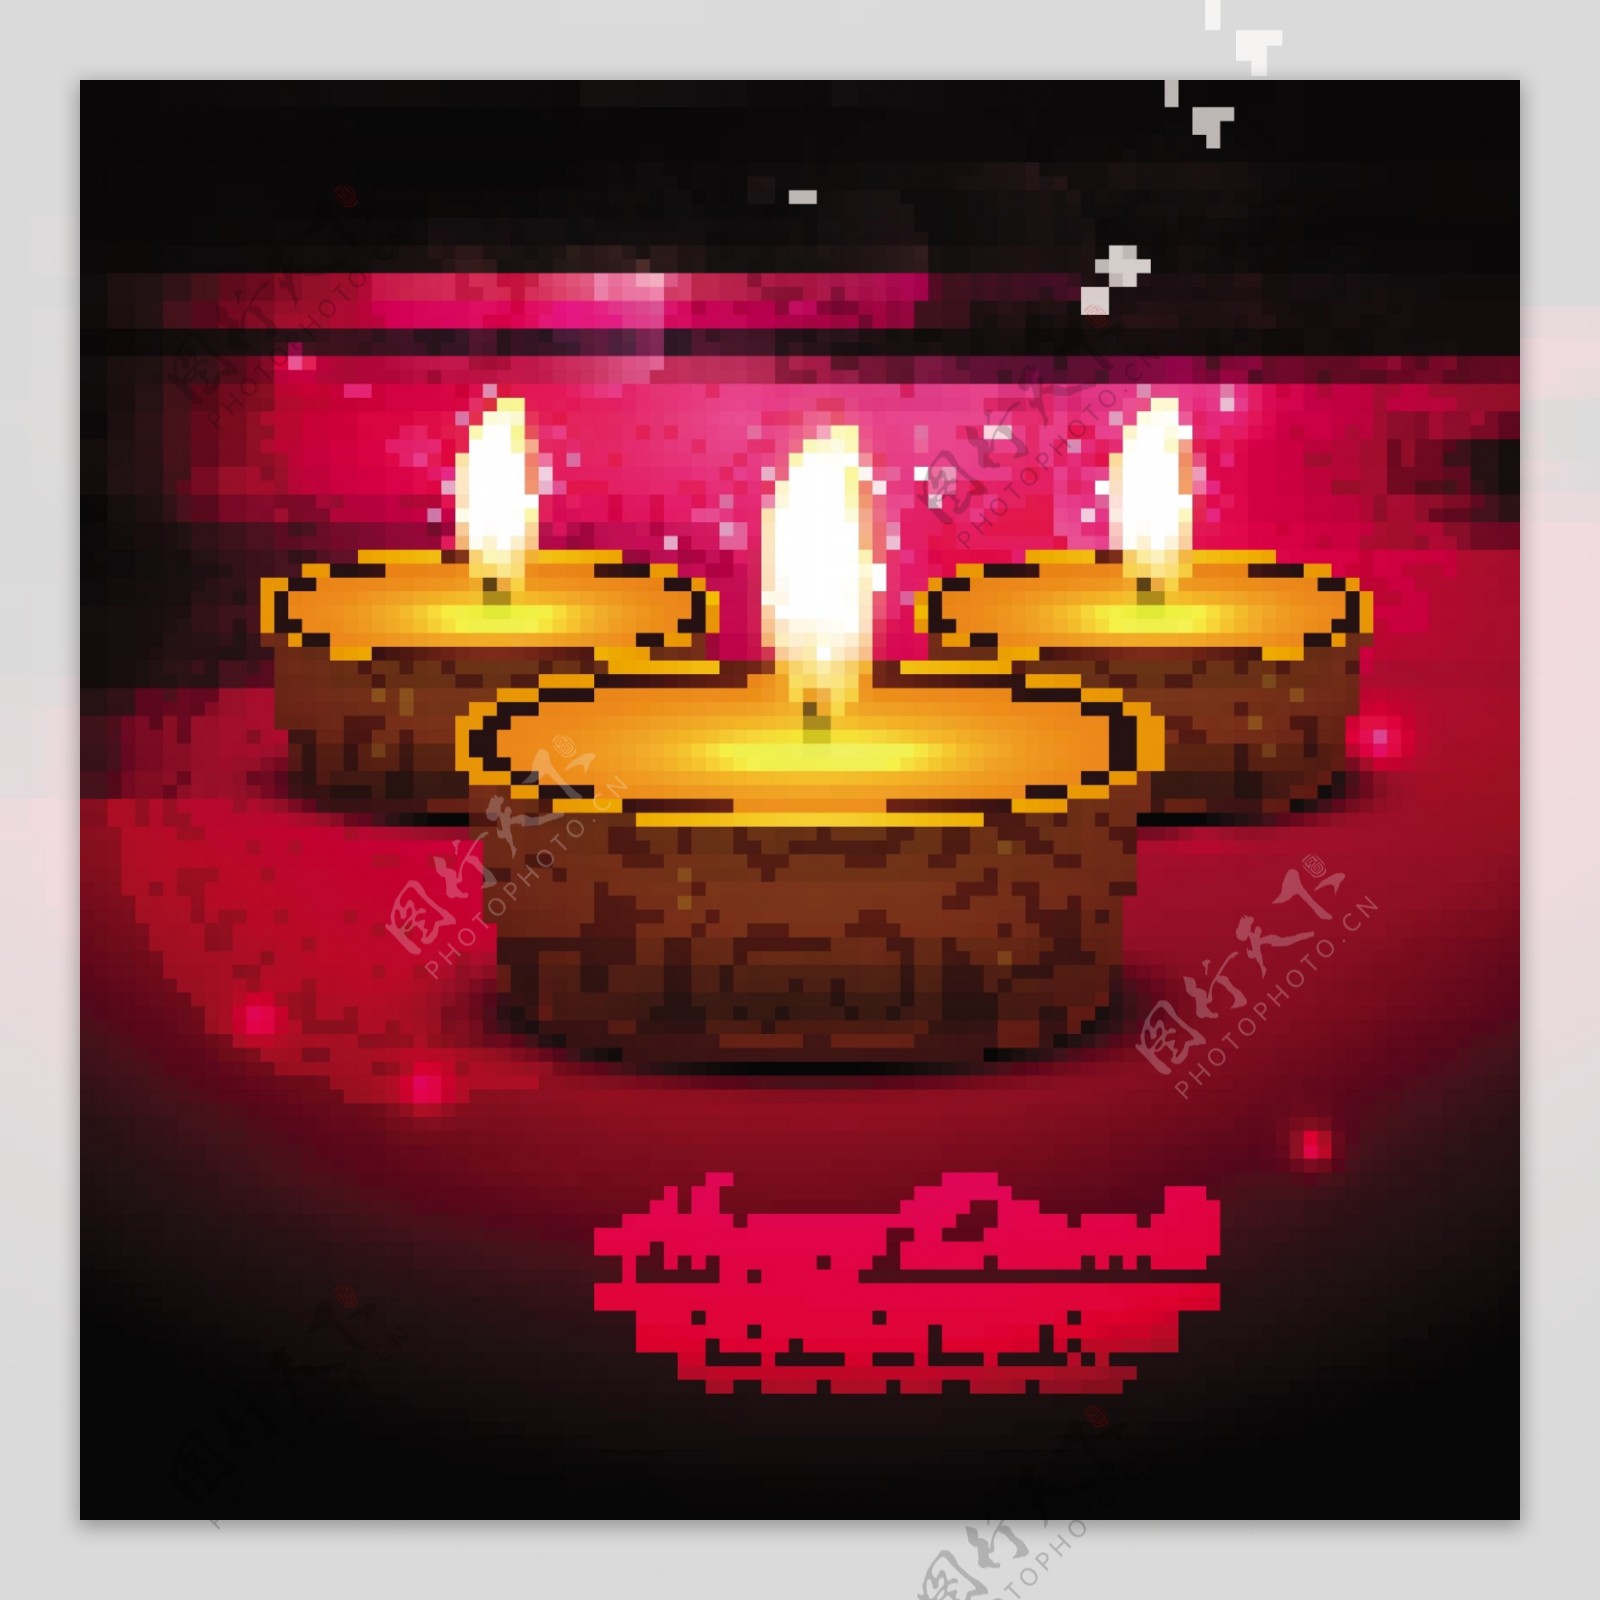 三蜡烛美丽的红色背景庆祝排灯节